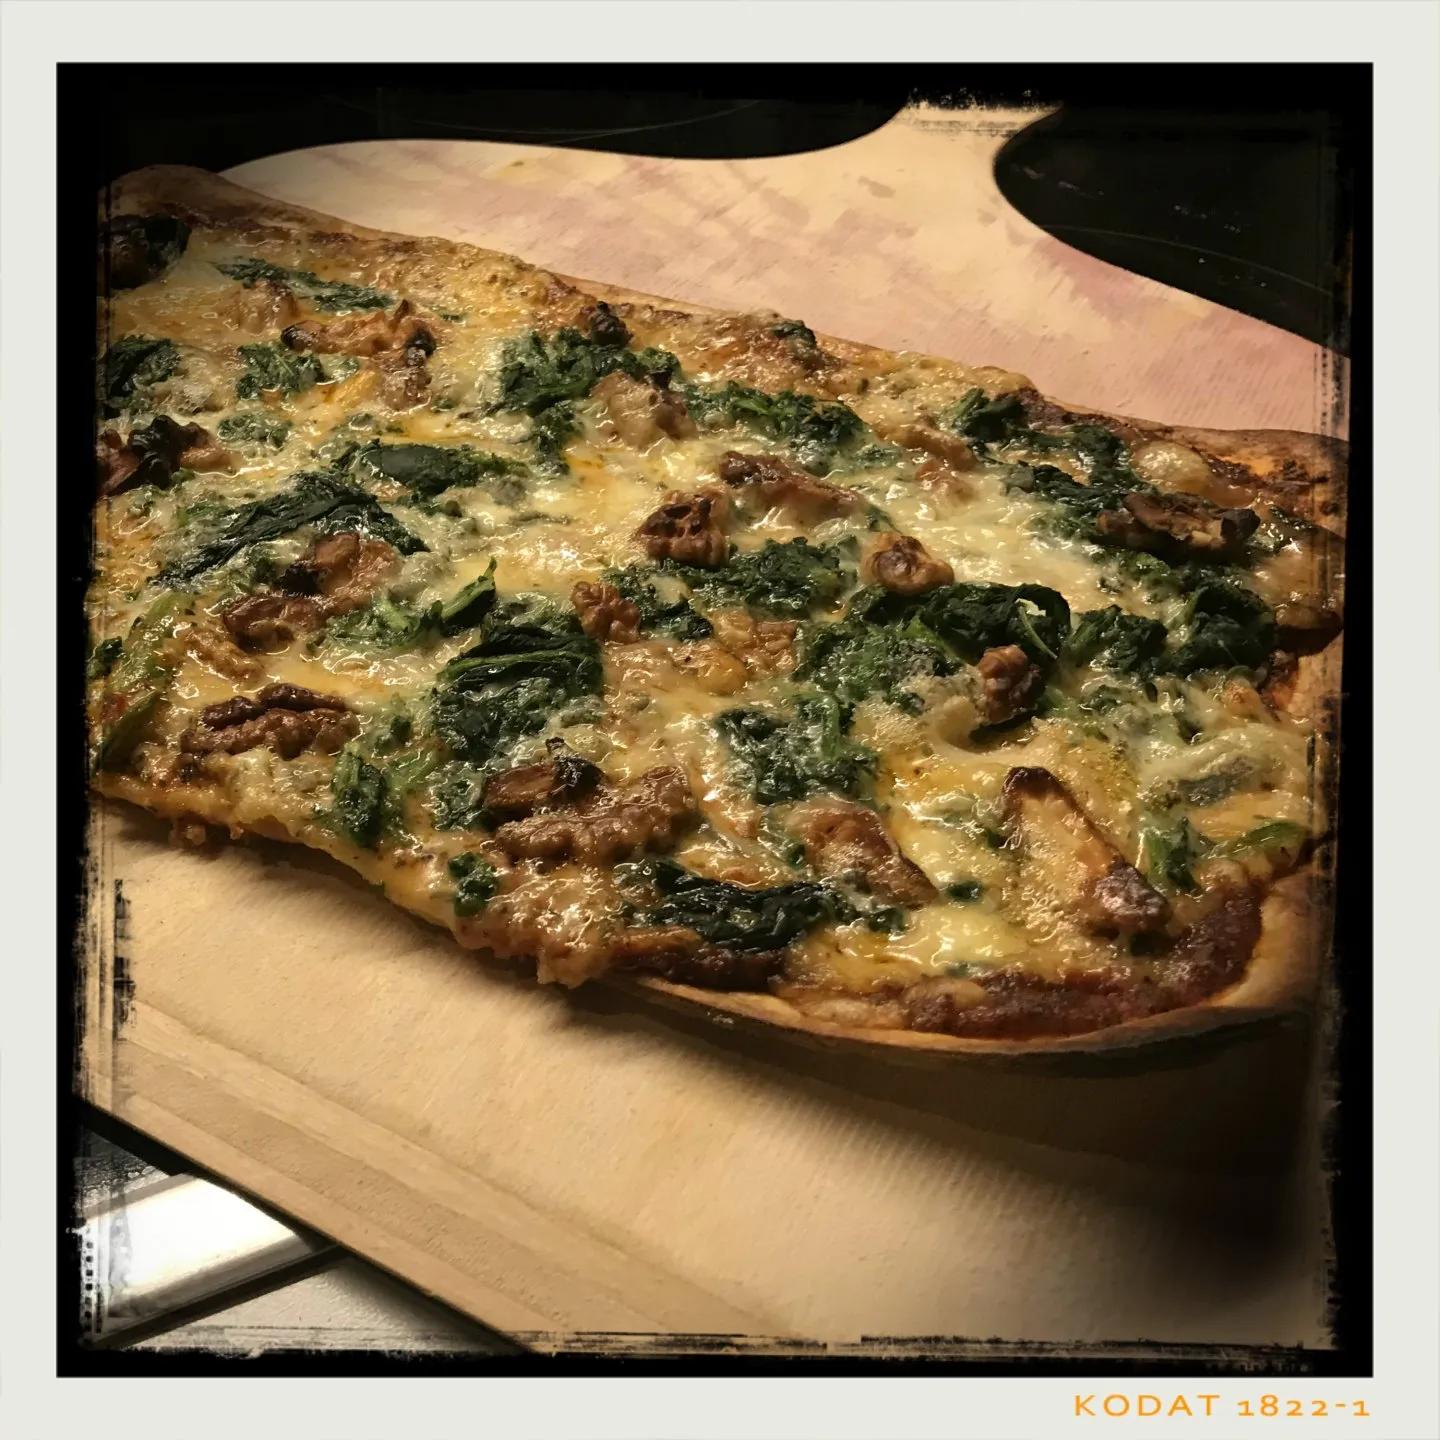 Pizza mit Blattspinat, Gorgonzola und Walnüssen – Schlemm dich fit!